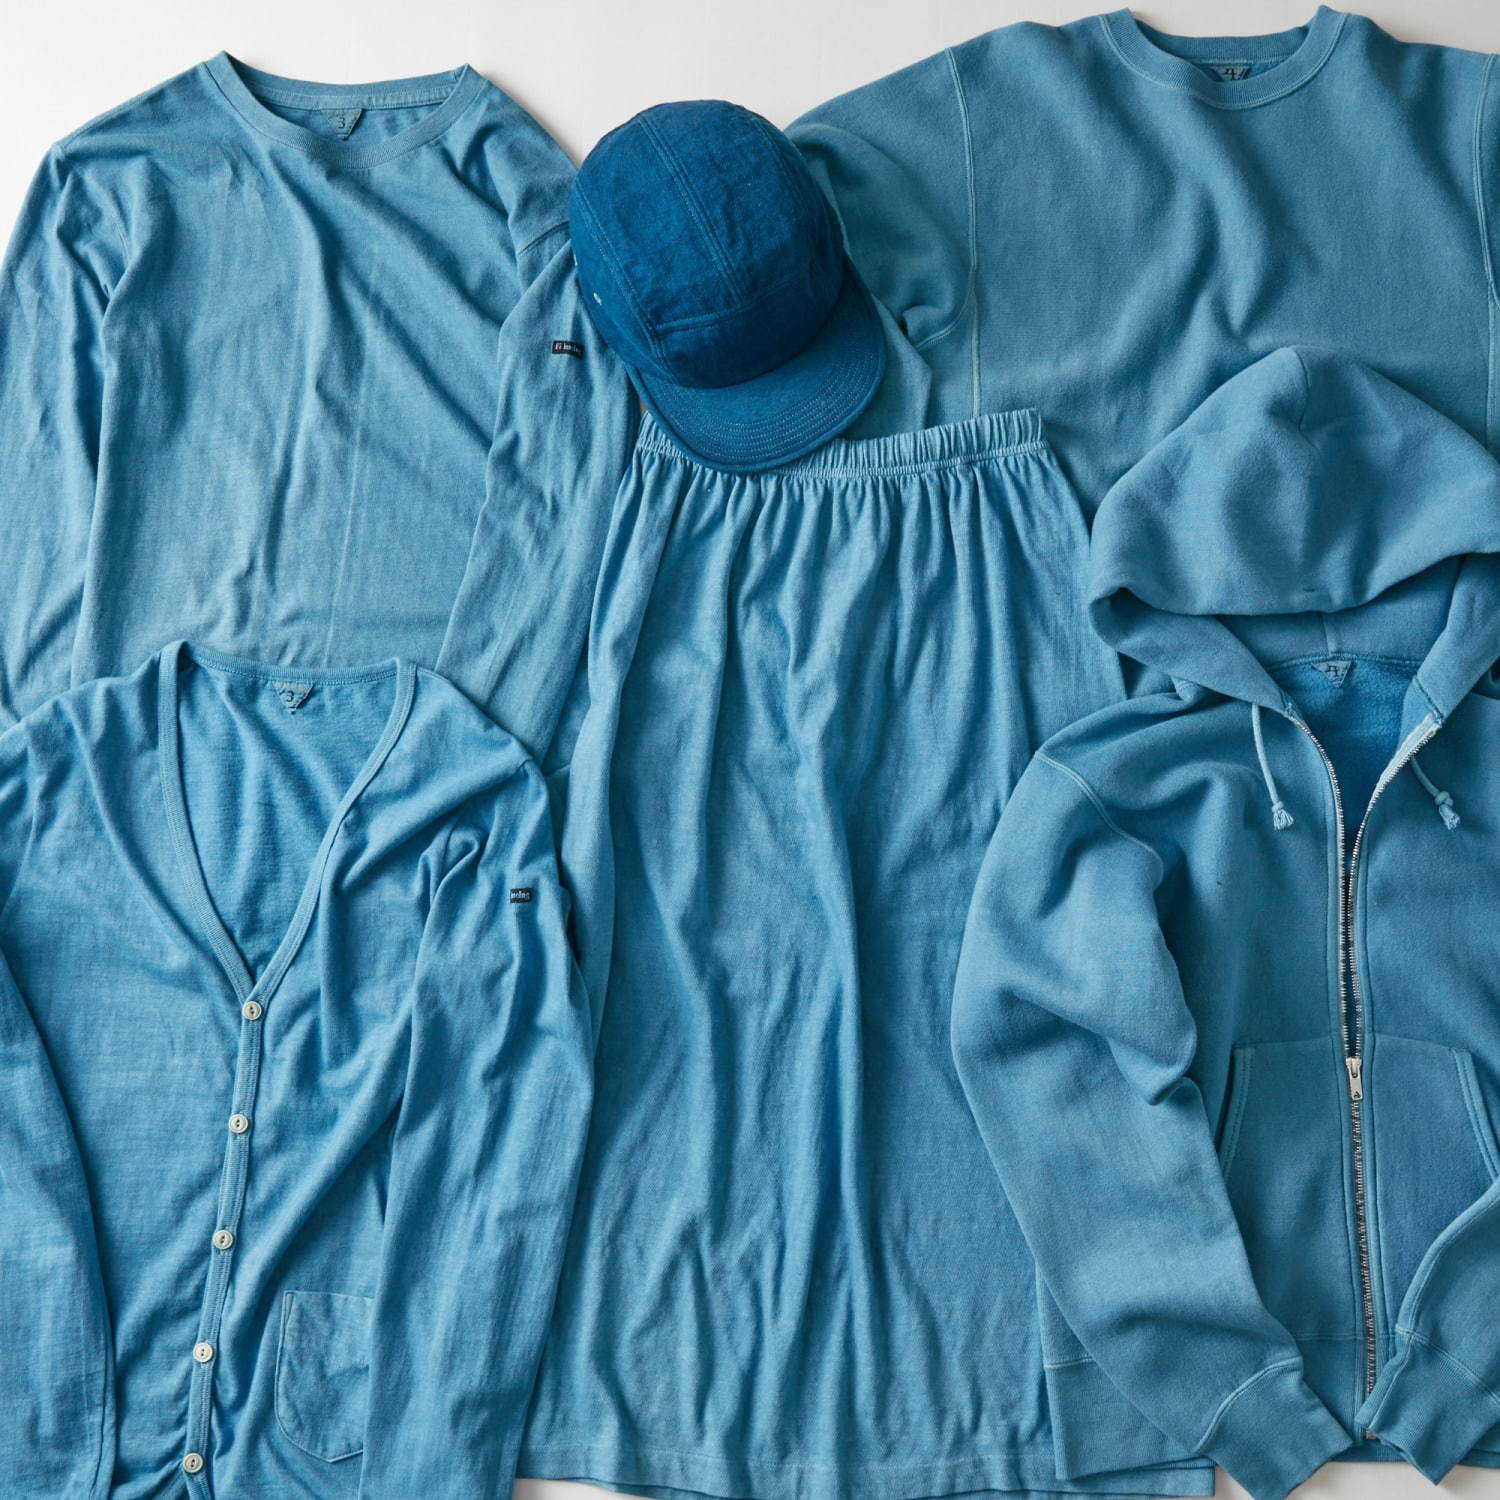 フィルメランジェ×藍染め職人集団リトマス、天然藍で染めたTシャツや